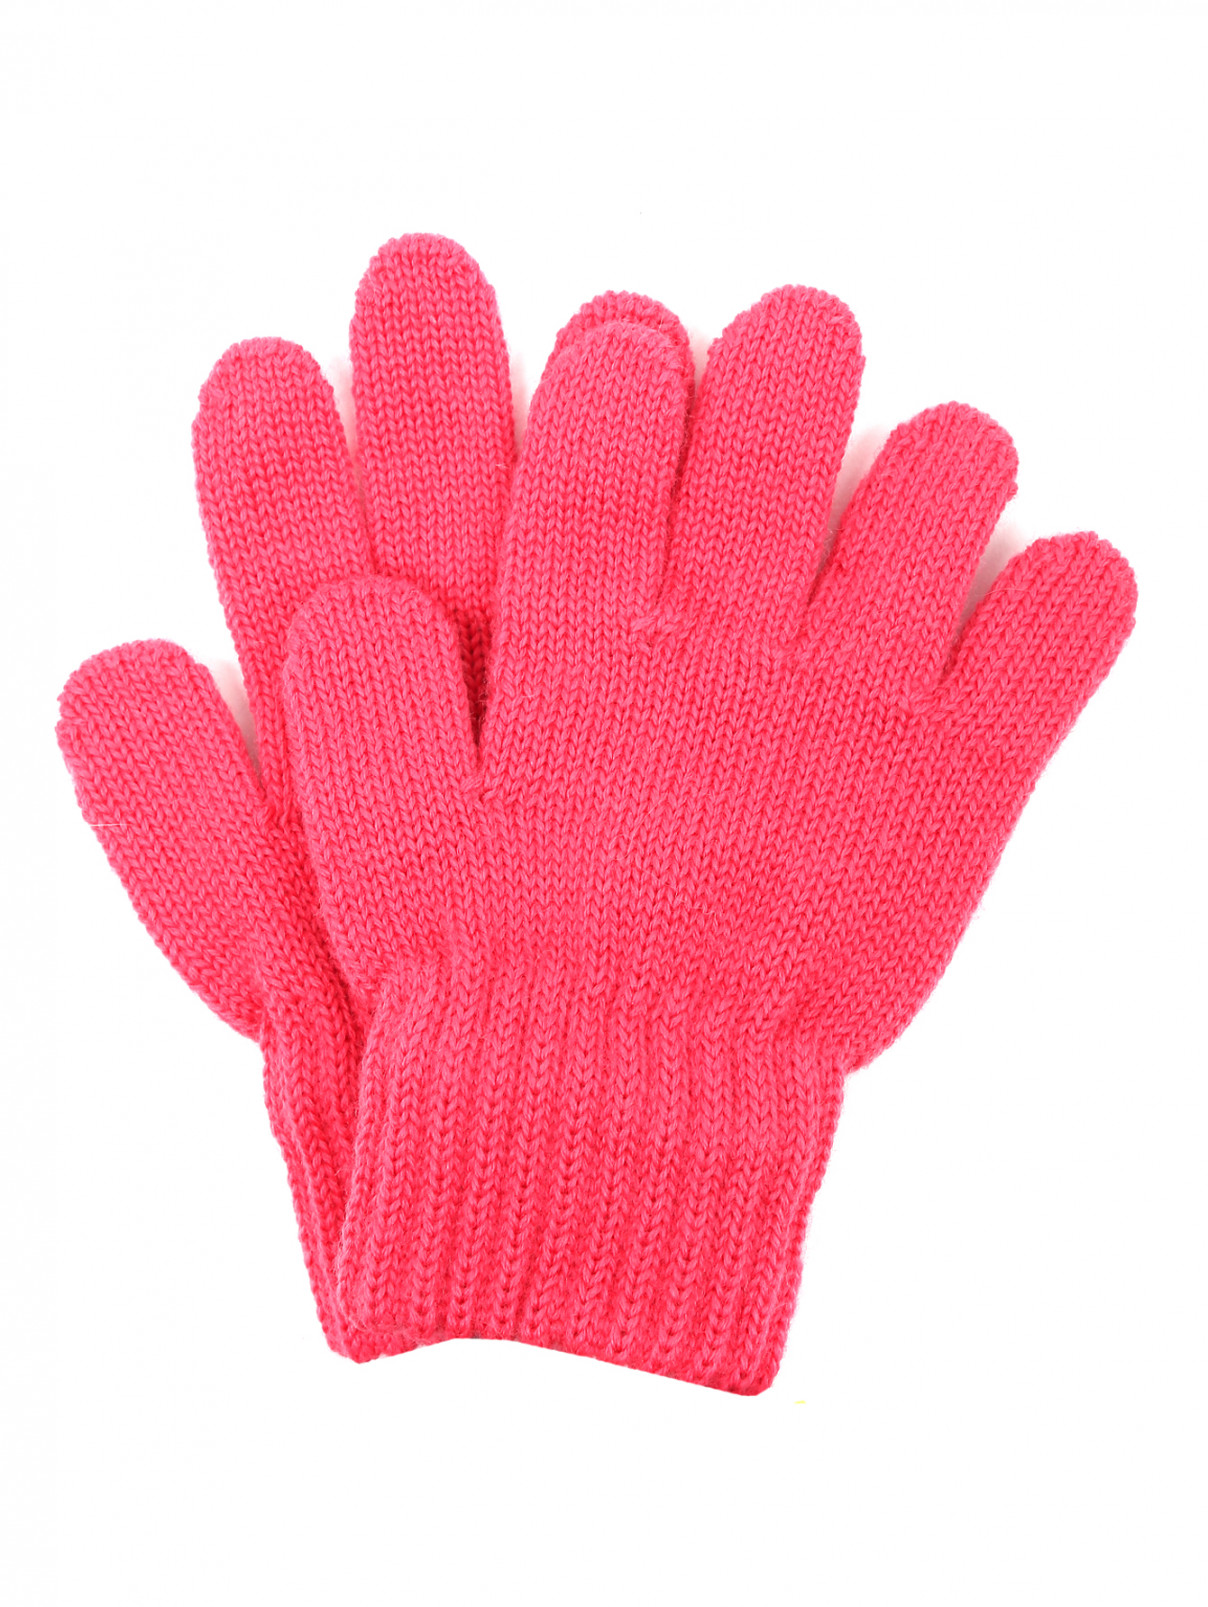 Перчатки из шерсти Catya  –  Общий вид  – Цвет:  Розовый